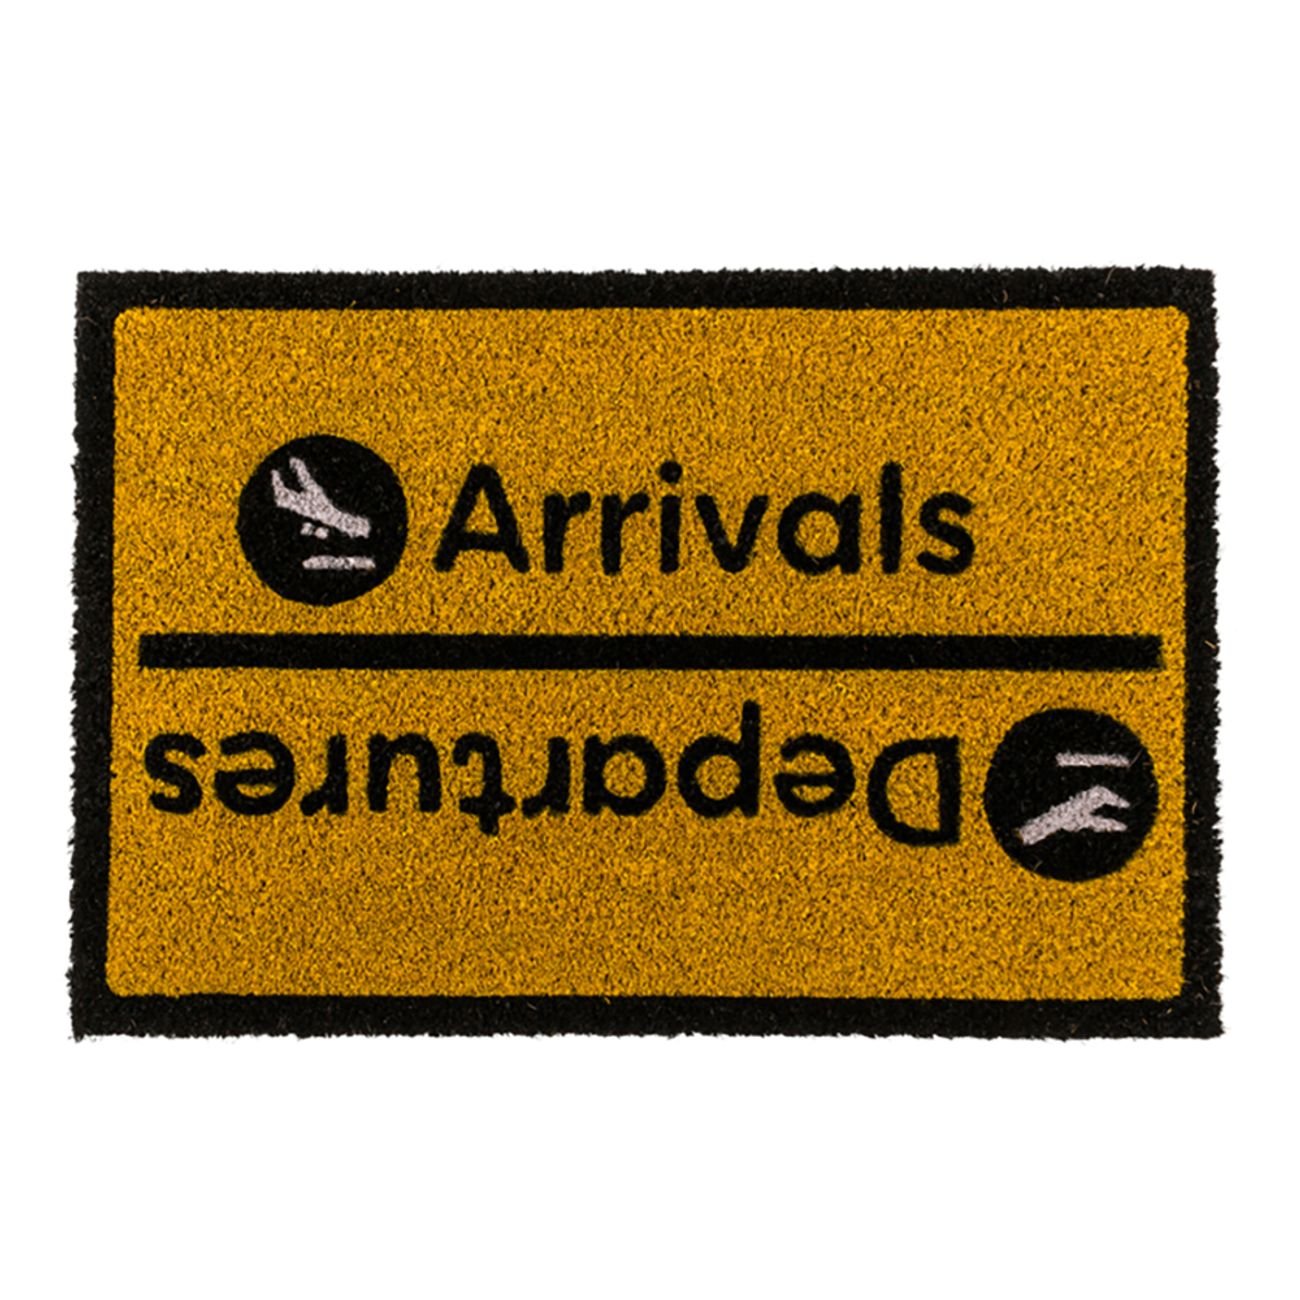 dorrmatta-arrivals-departures-86587-1